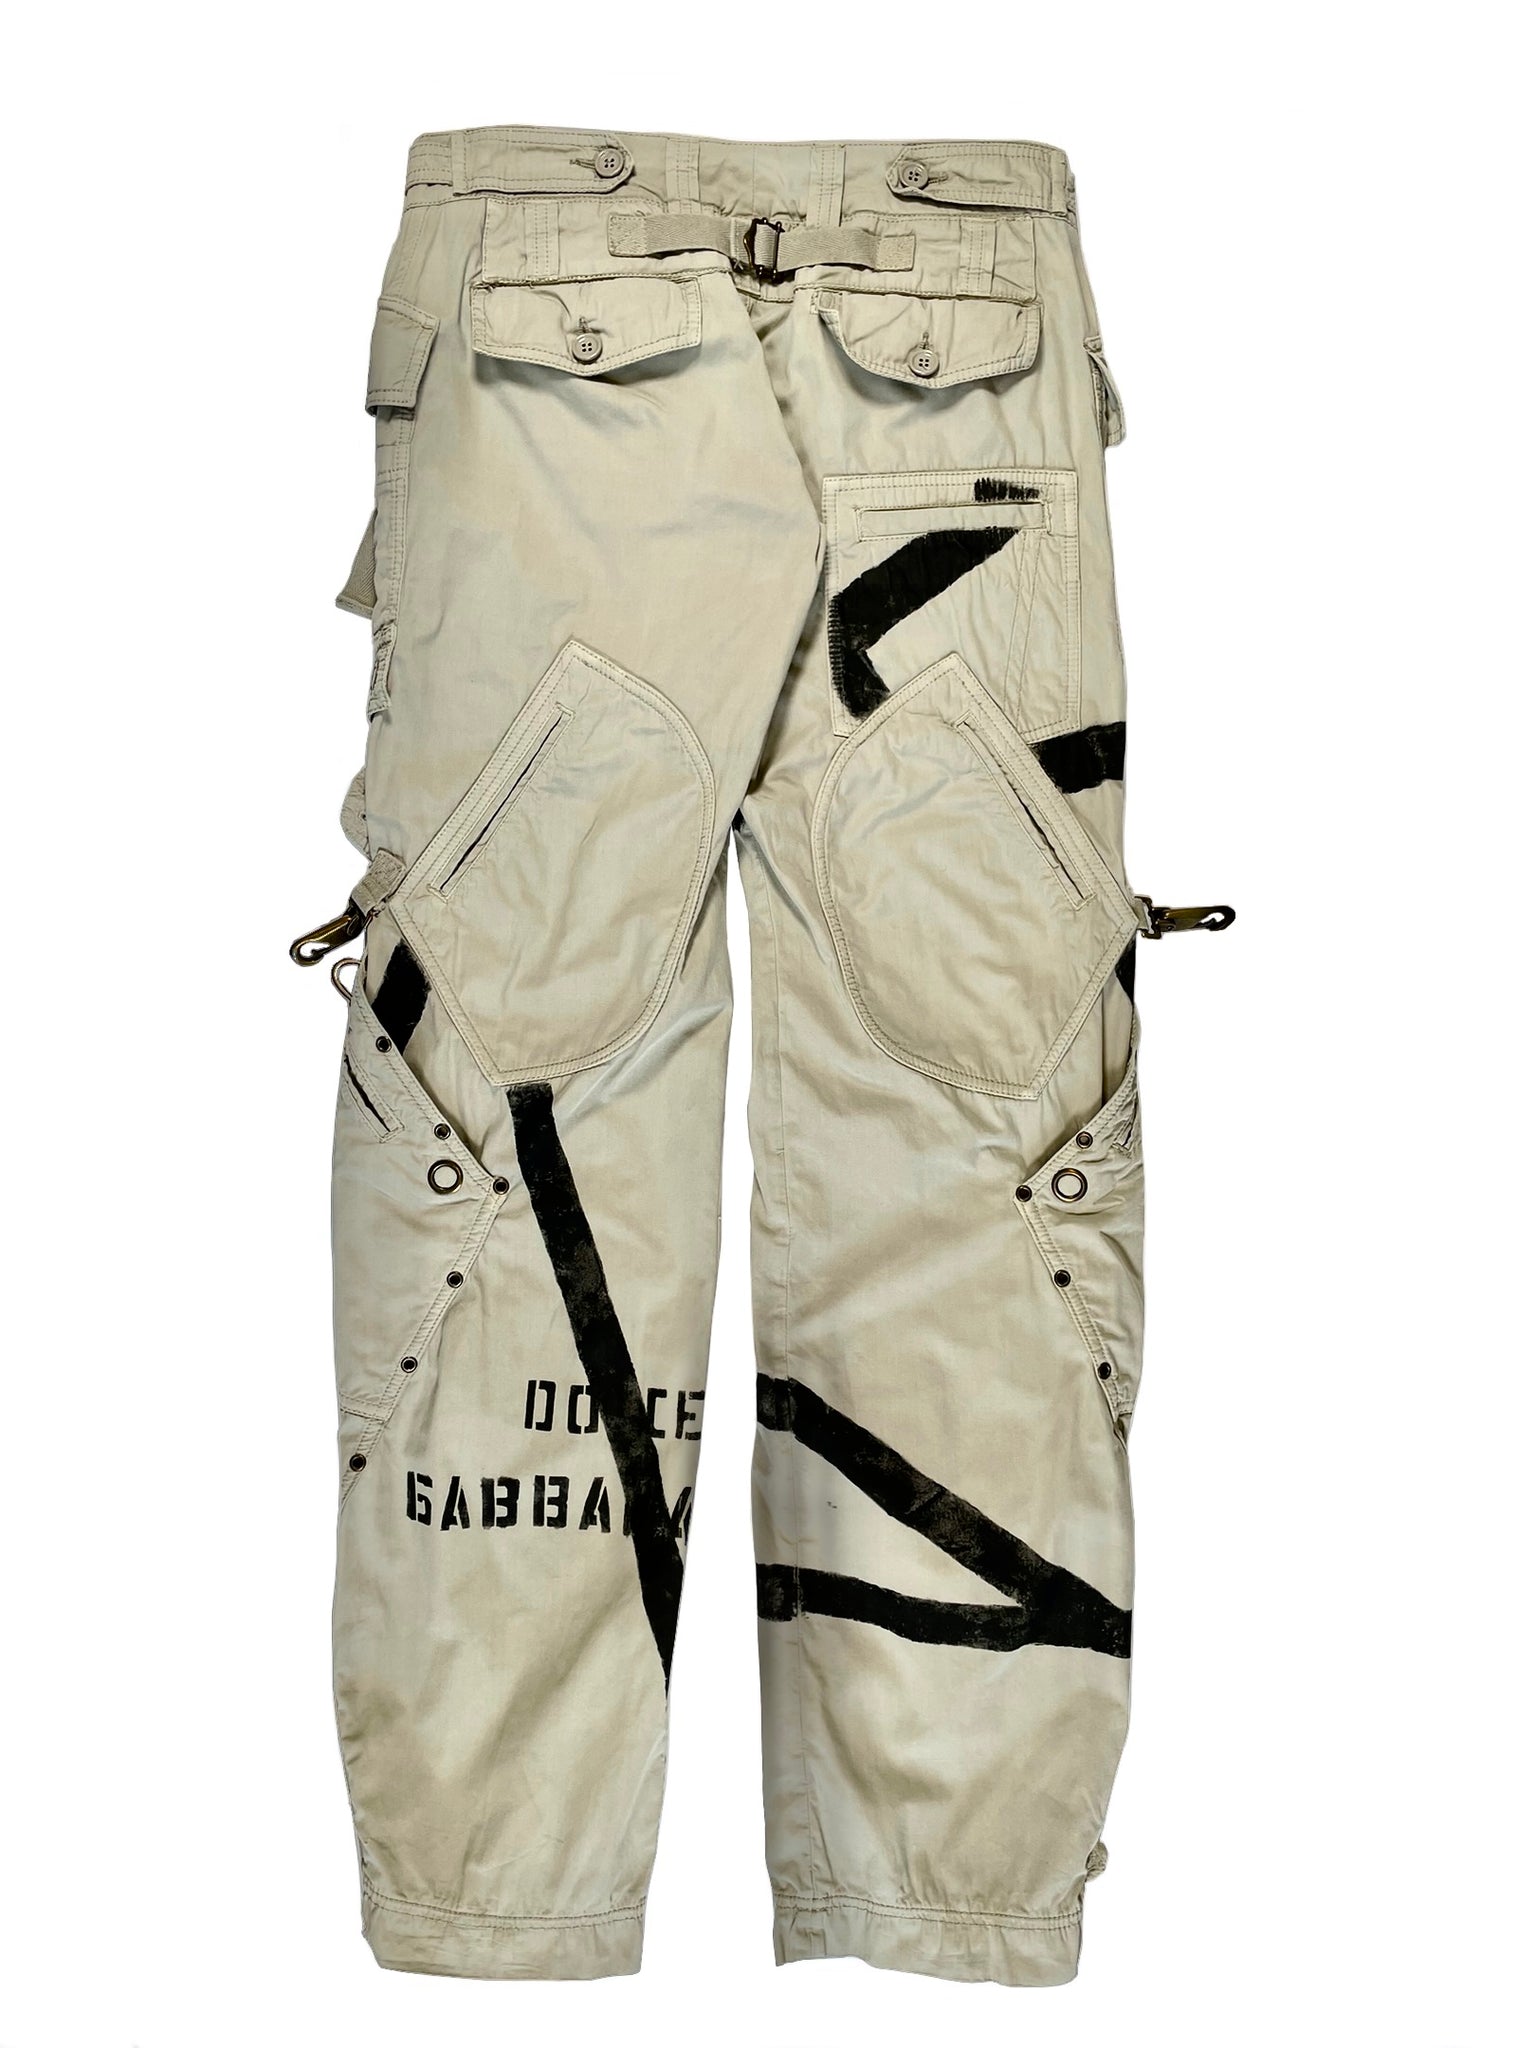 2000's Dolce & Gabbana bondage military cargo pants – elevated 